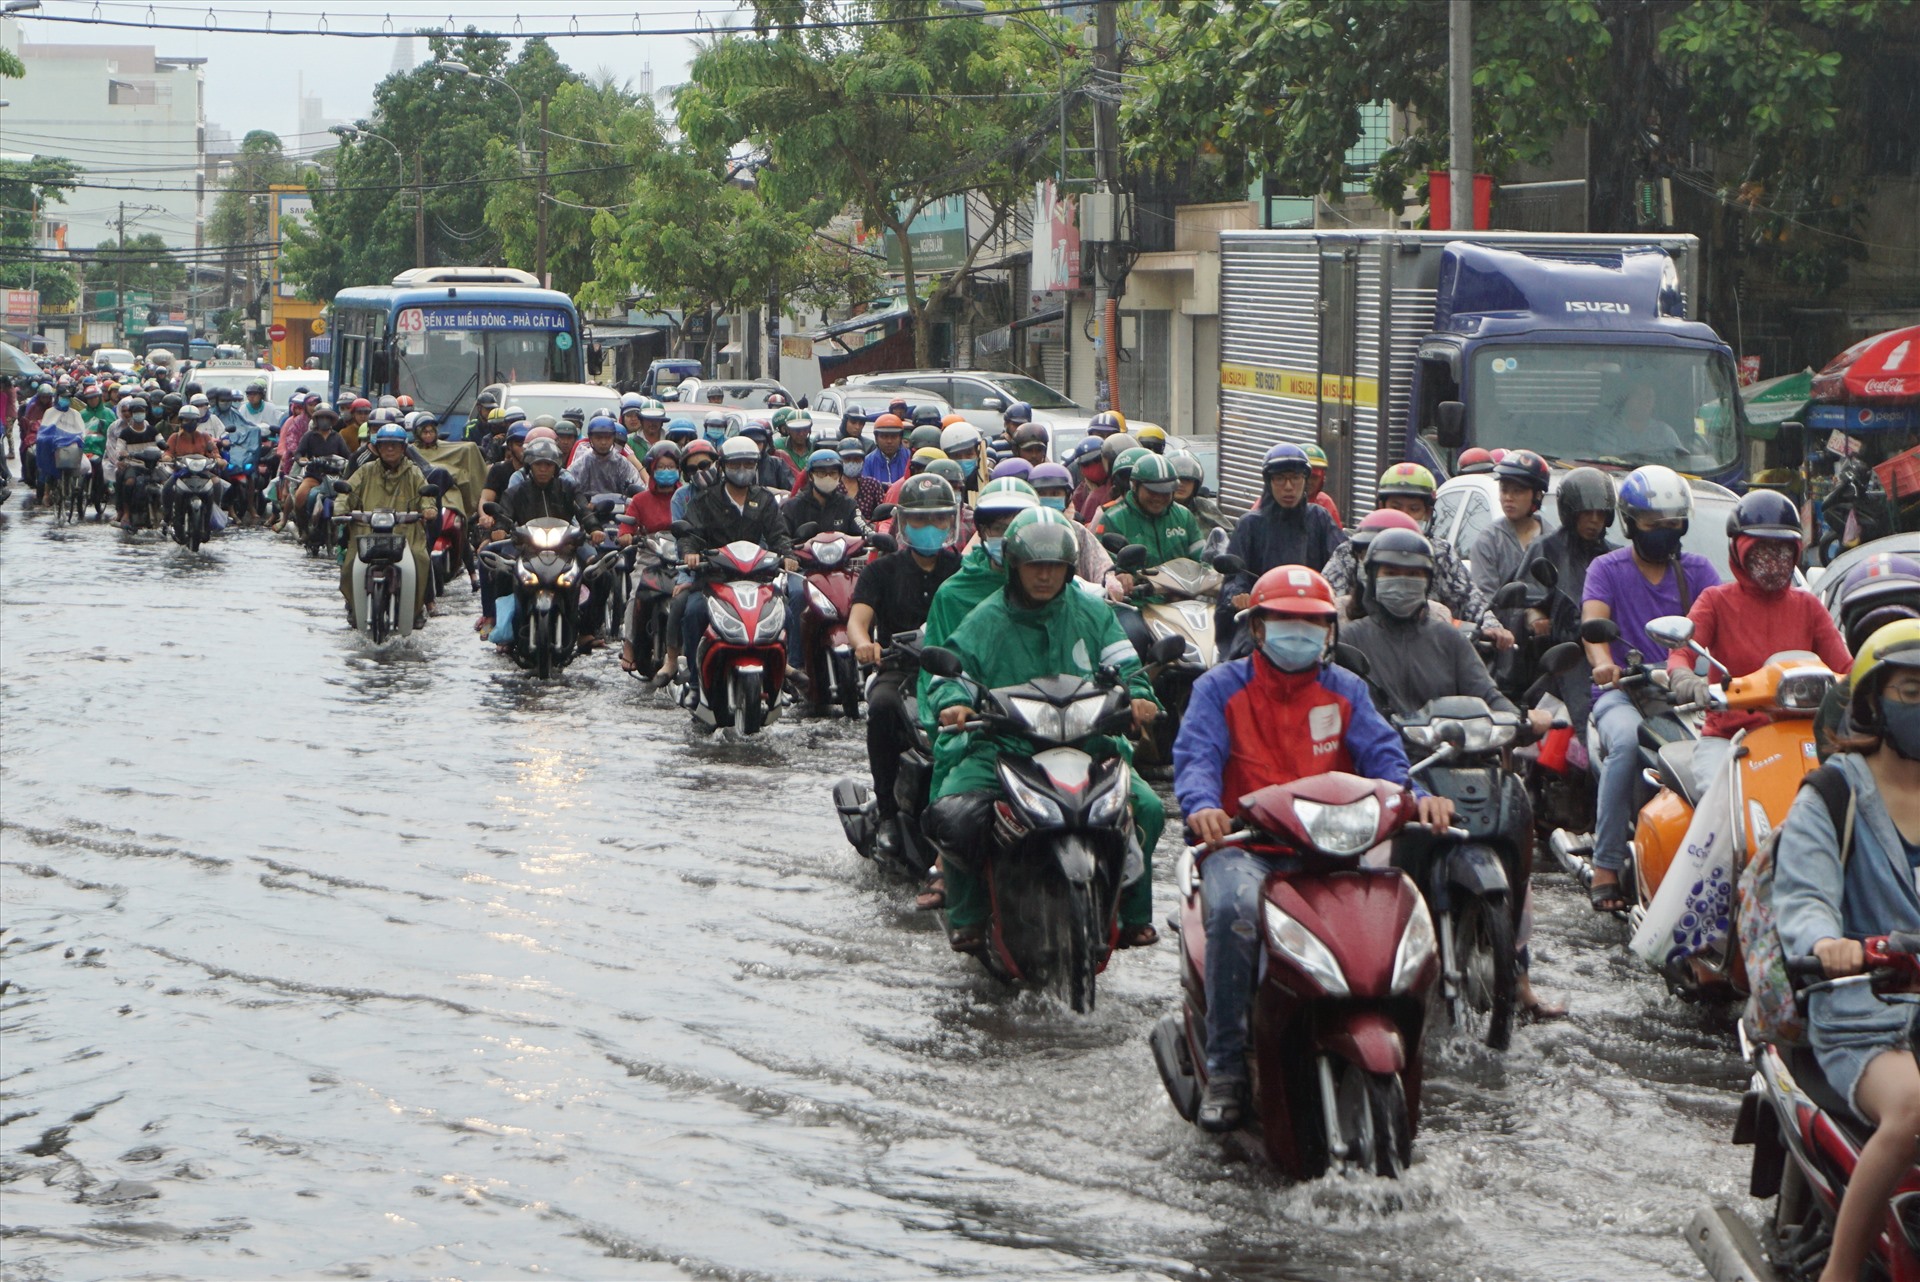 Quốc lộ 13 đoạn qua Bến xe Miền Đông (quận Bình Thạnh) bị ngập nước kéo dài hơn 1km.   Ảnh: Minh Quân